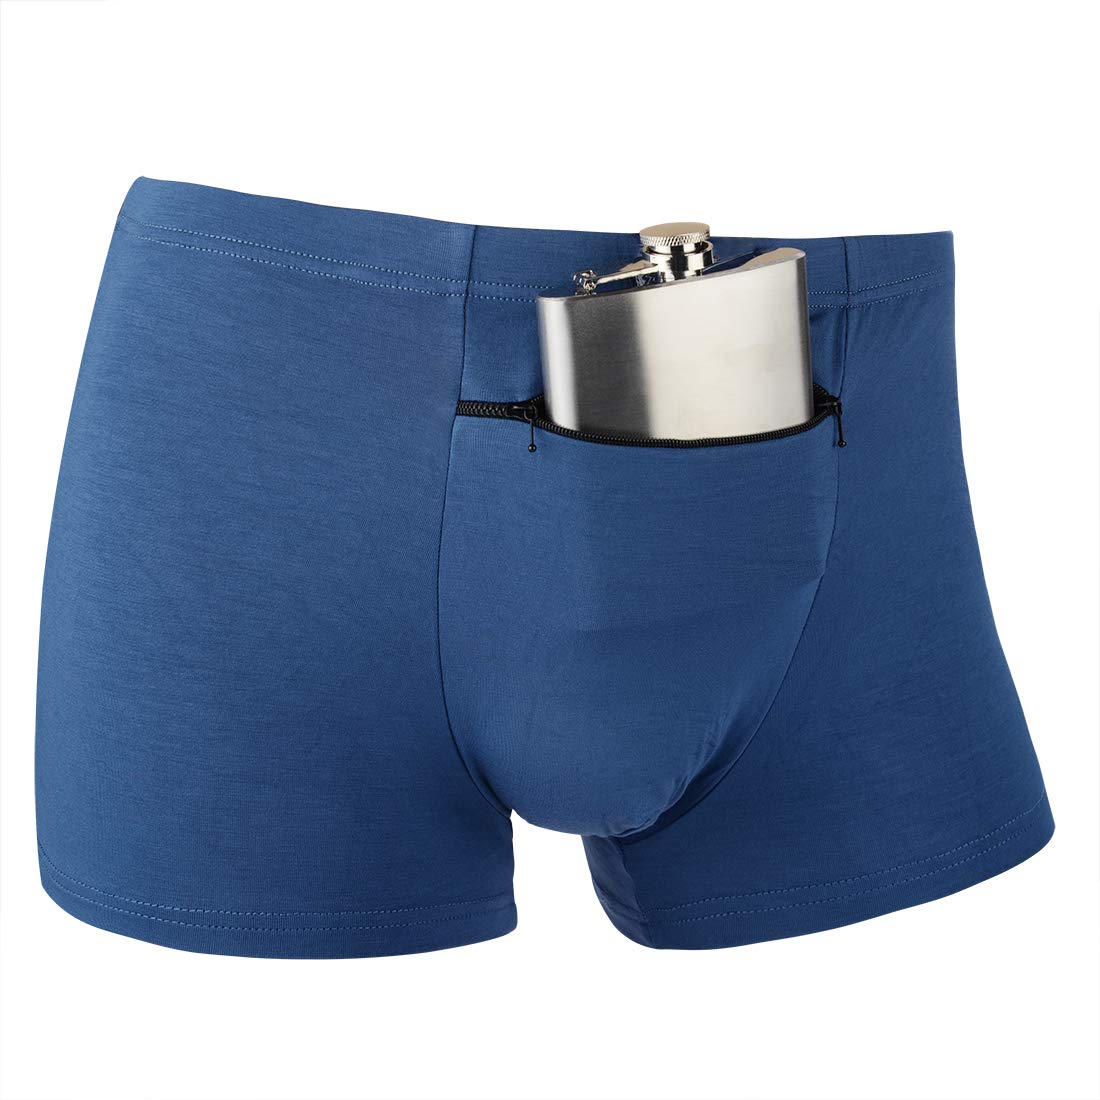 blue underwear for men